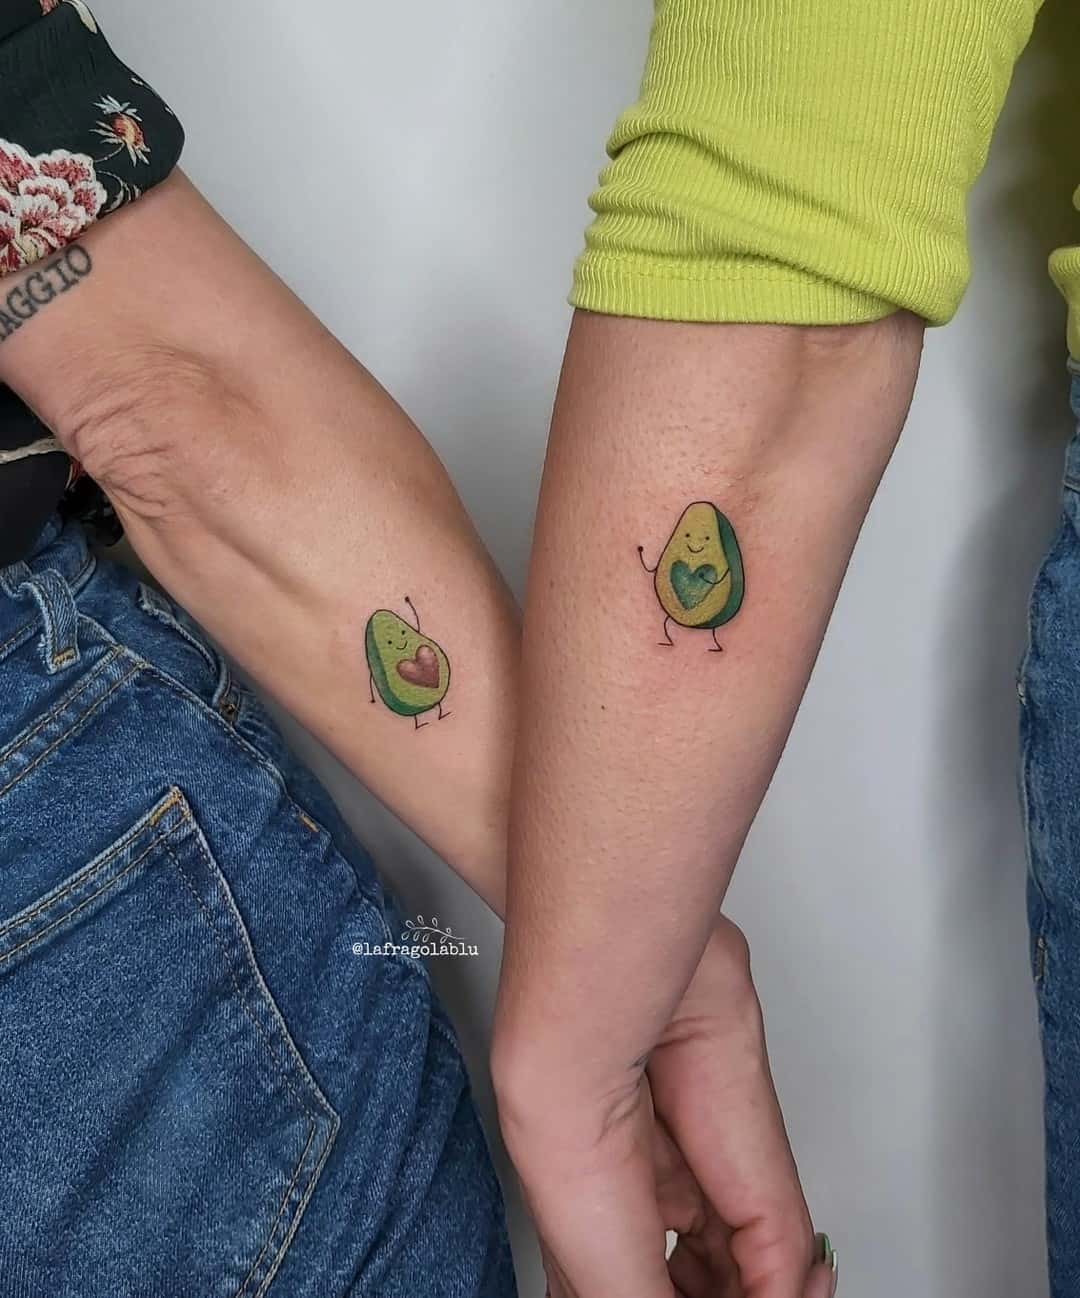 Cute matching avacado tattoo by lafragolblu